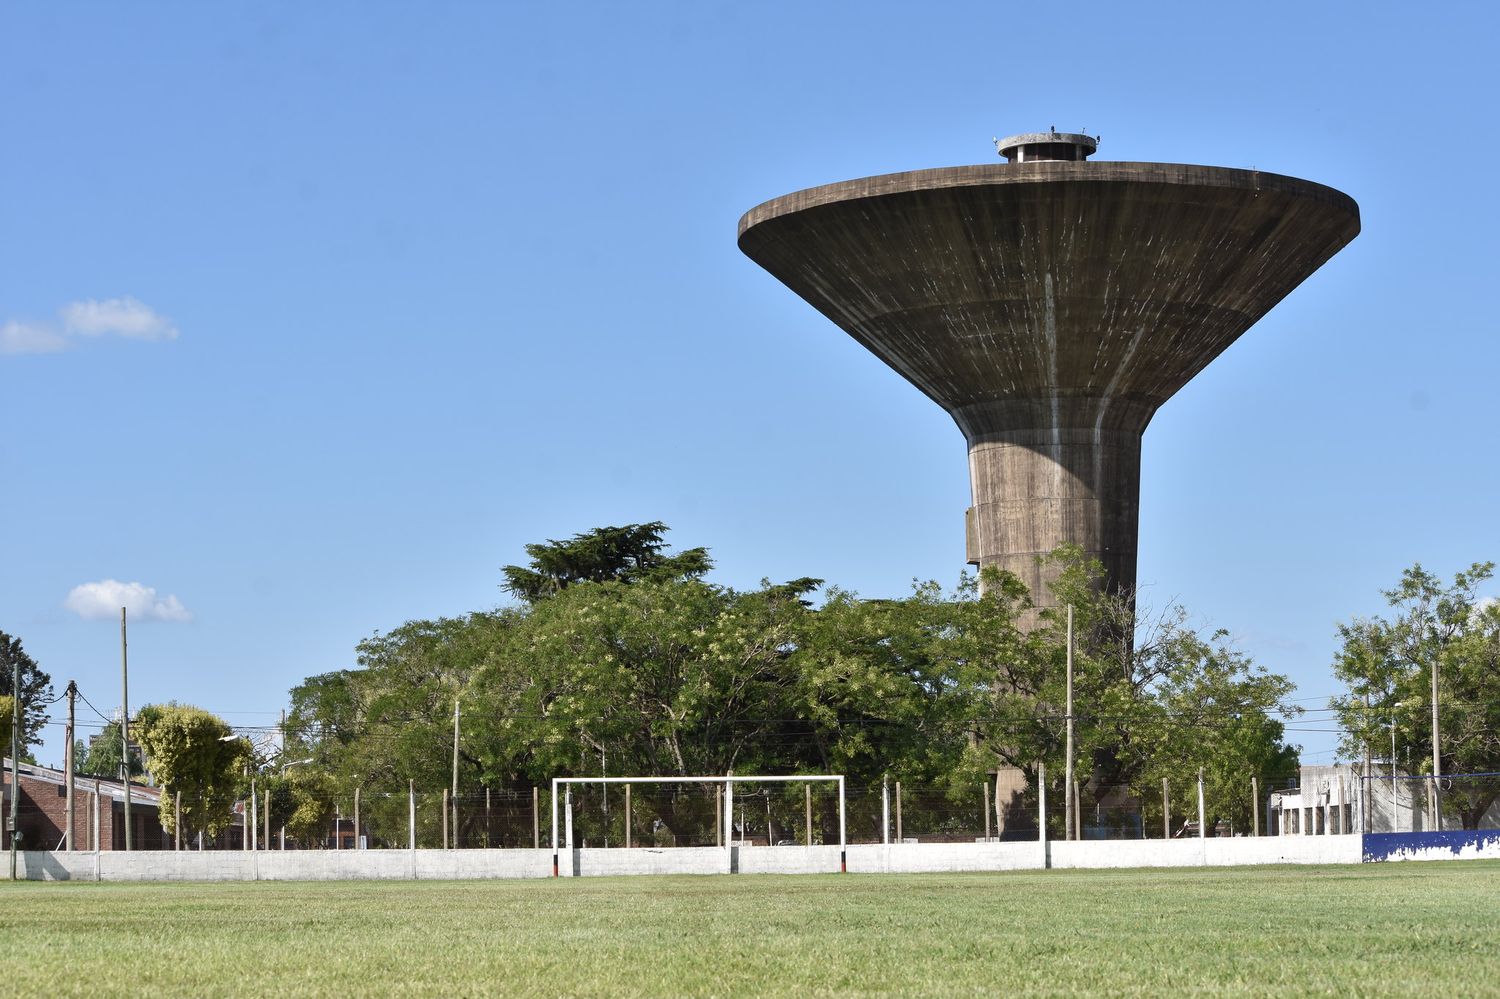 Torneo de Clubes 2022: sin luz artificial en el Estadio Municipal, Mitre muda su localía a Baradero